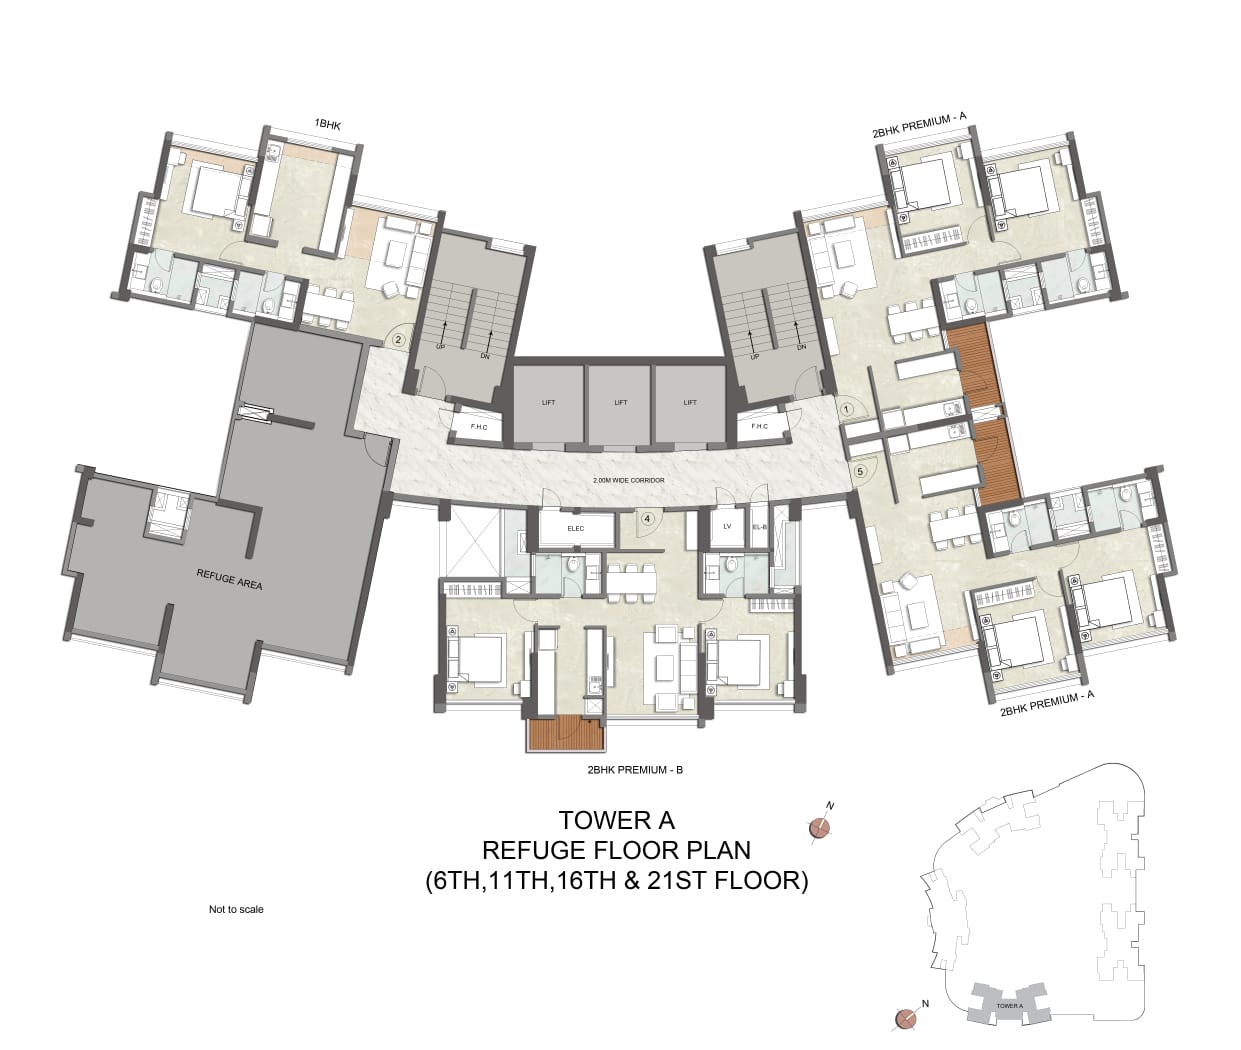 Refuge Floor Plan – Tower A